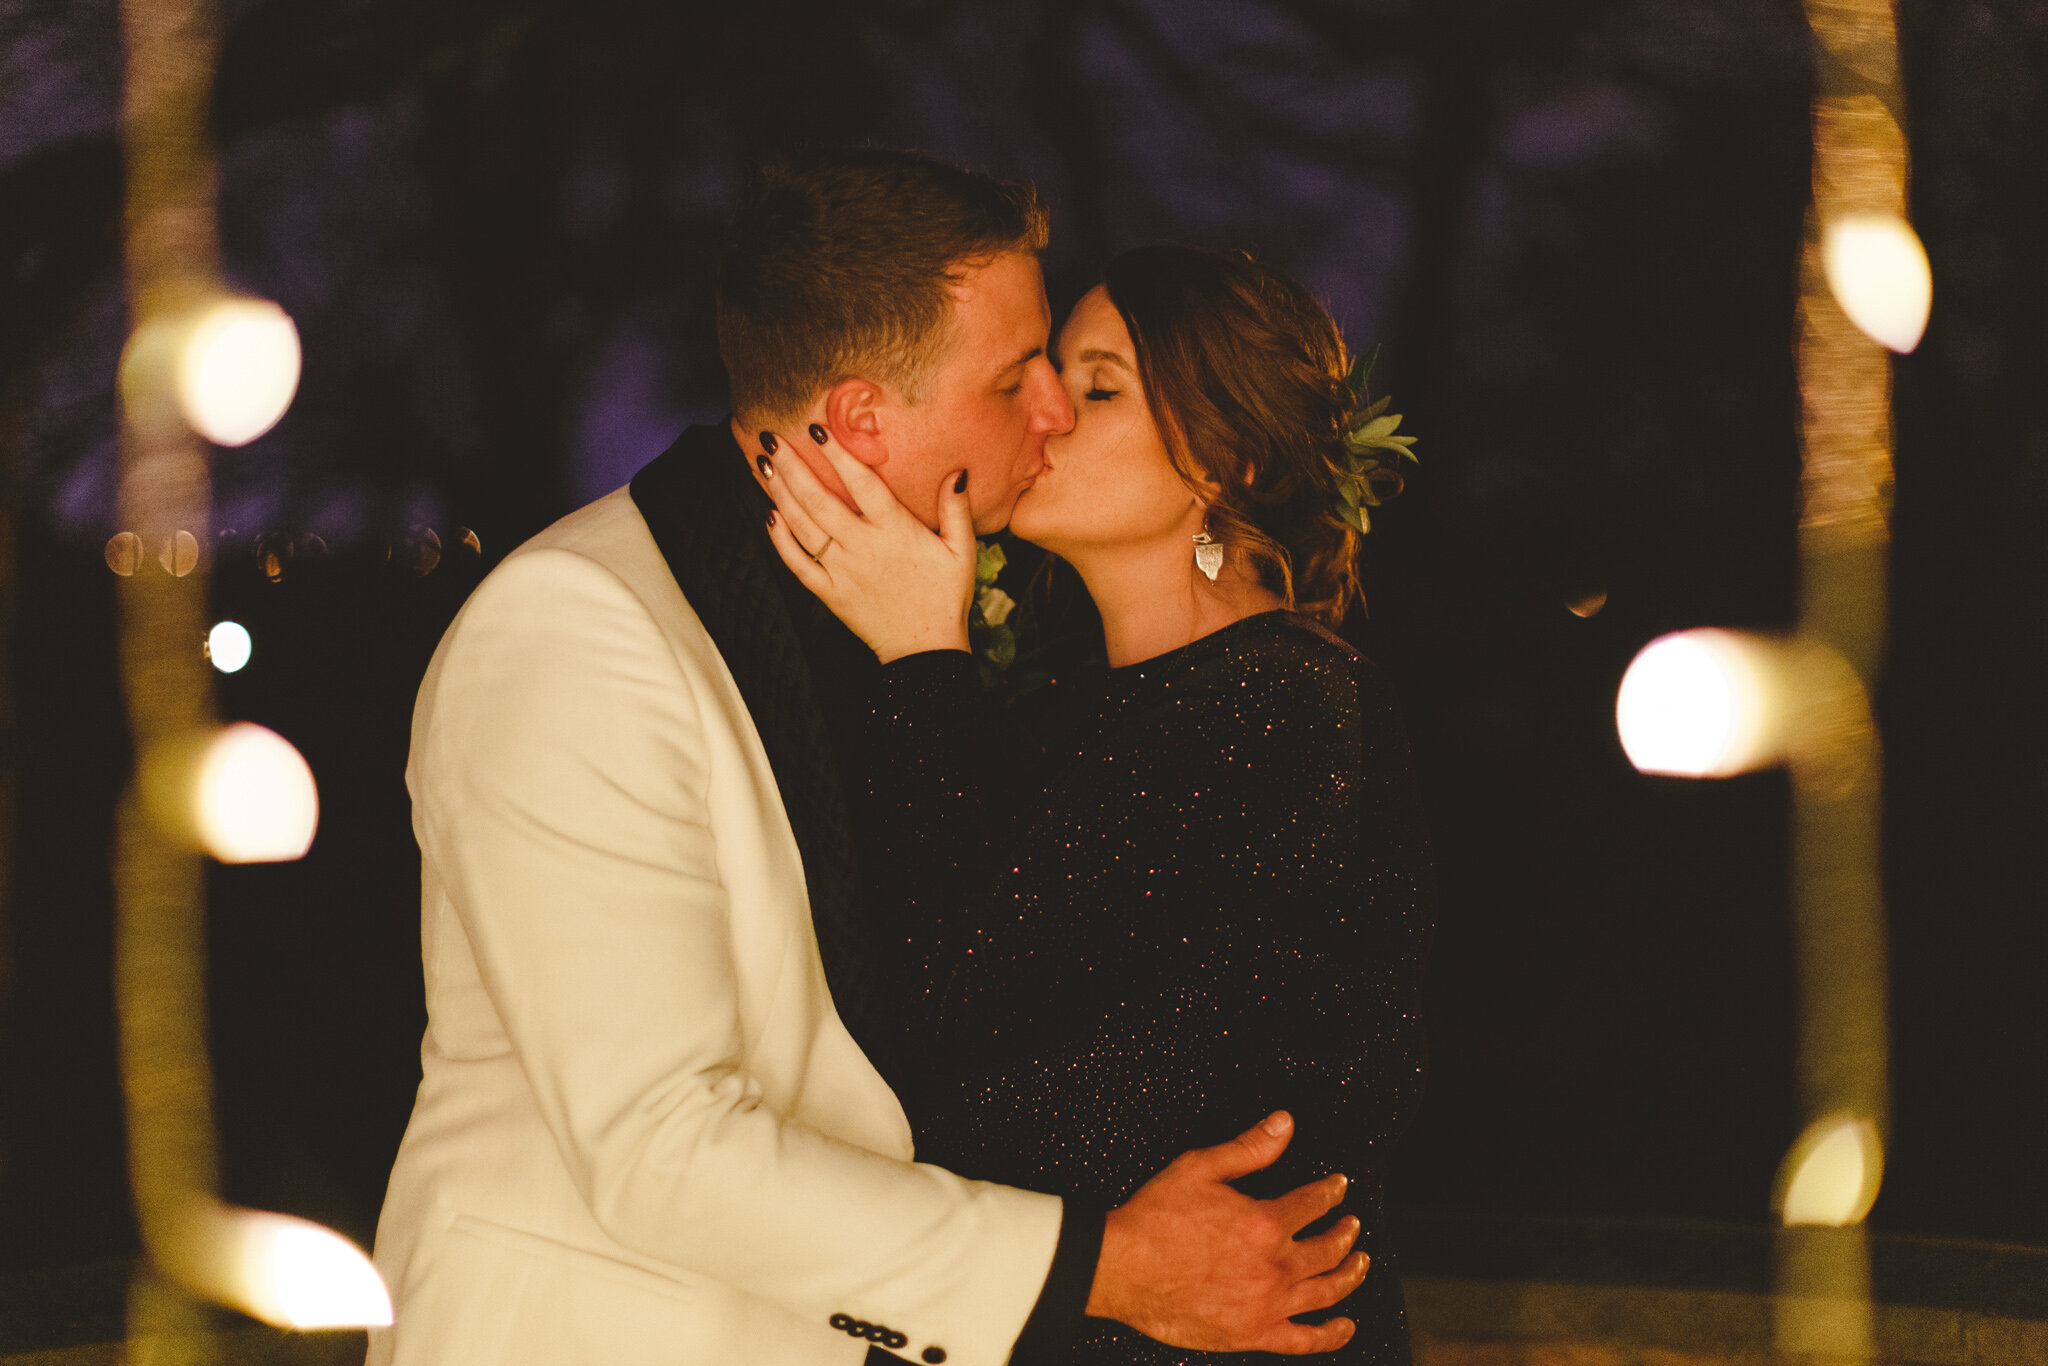 derbyshire-wedding-elopement-photographer-best-2020-78.jpg